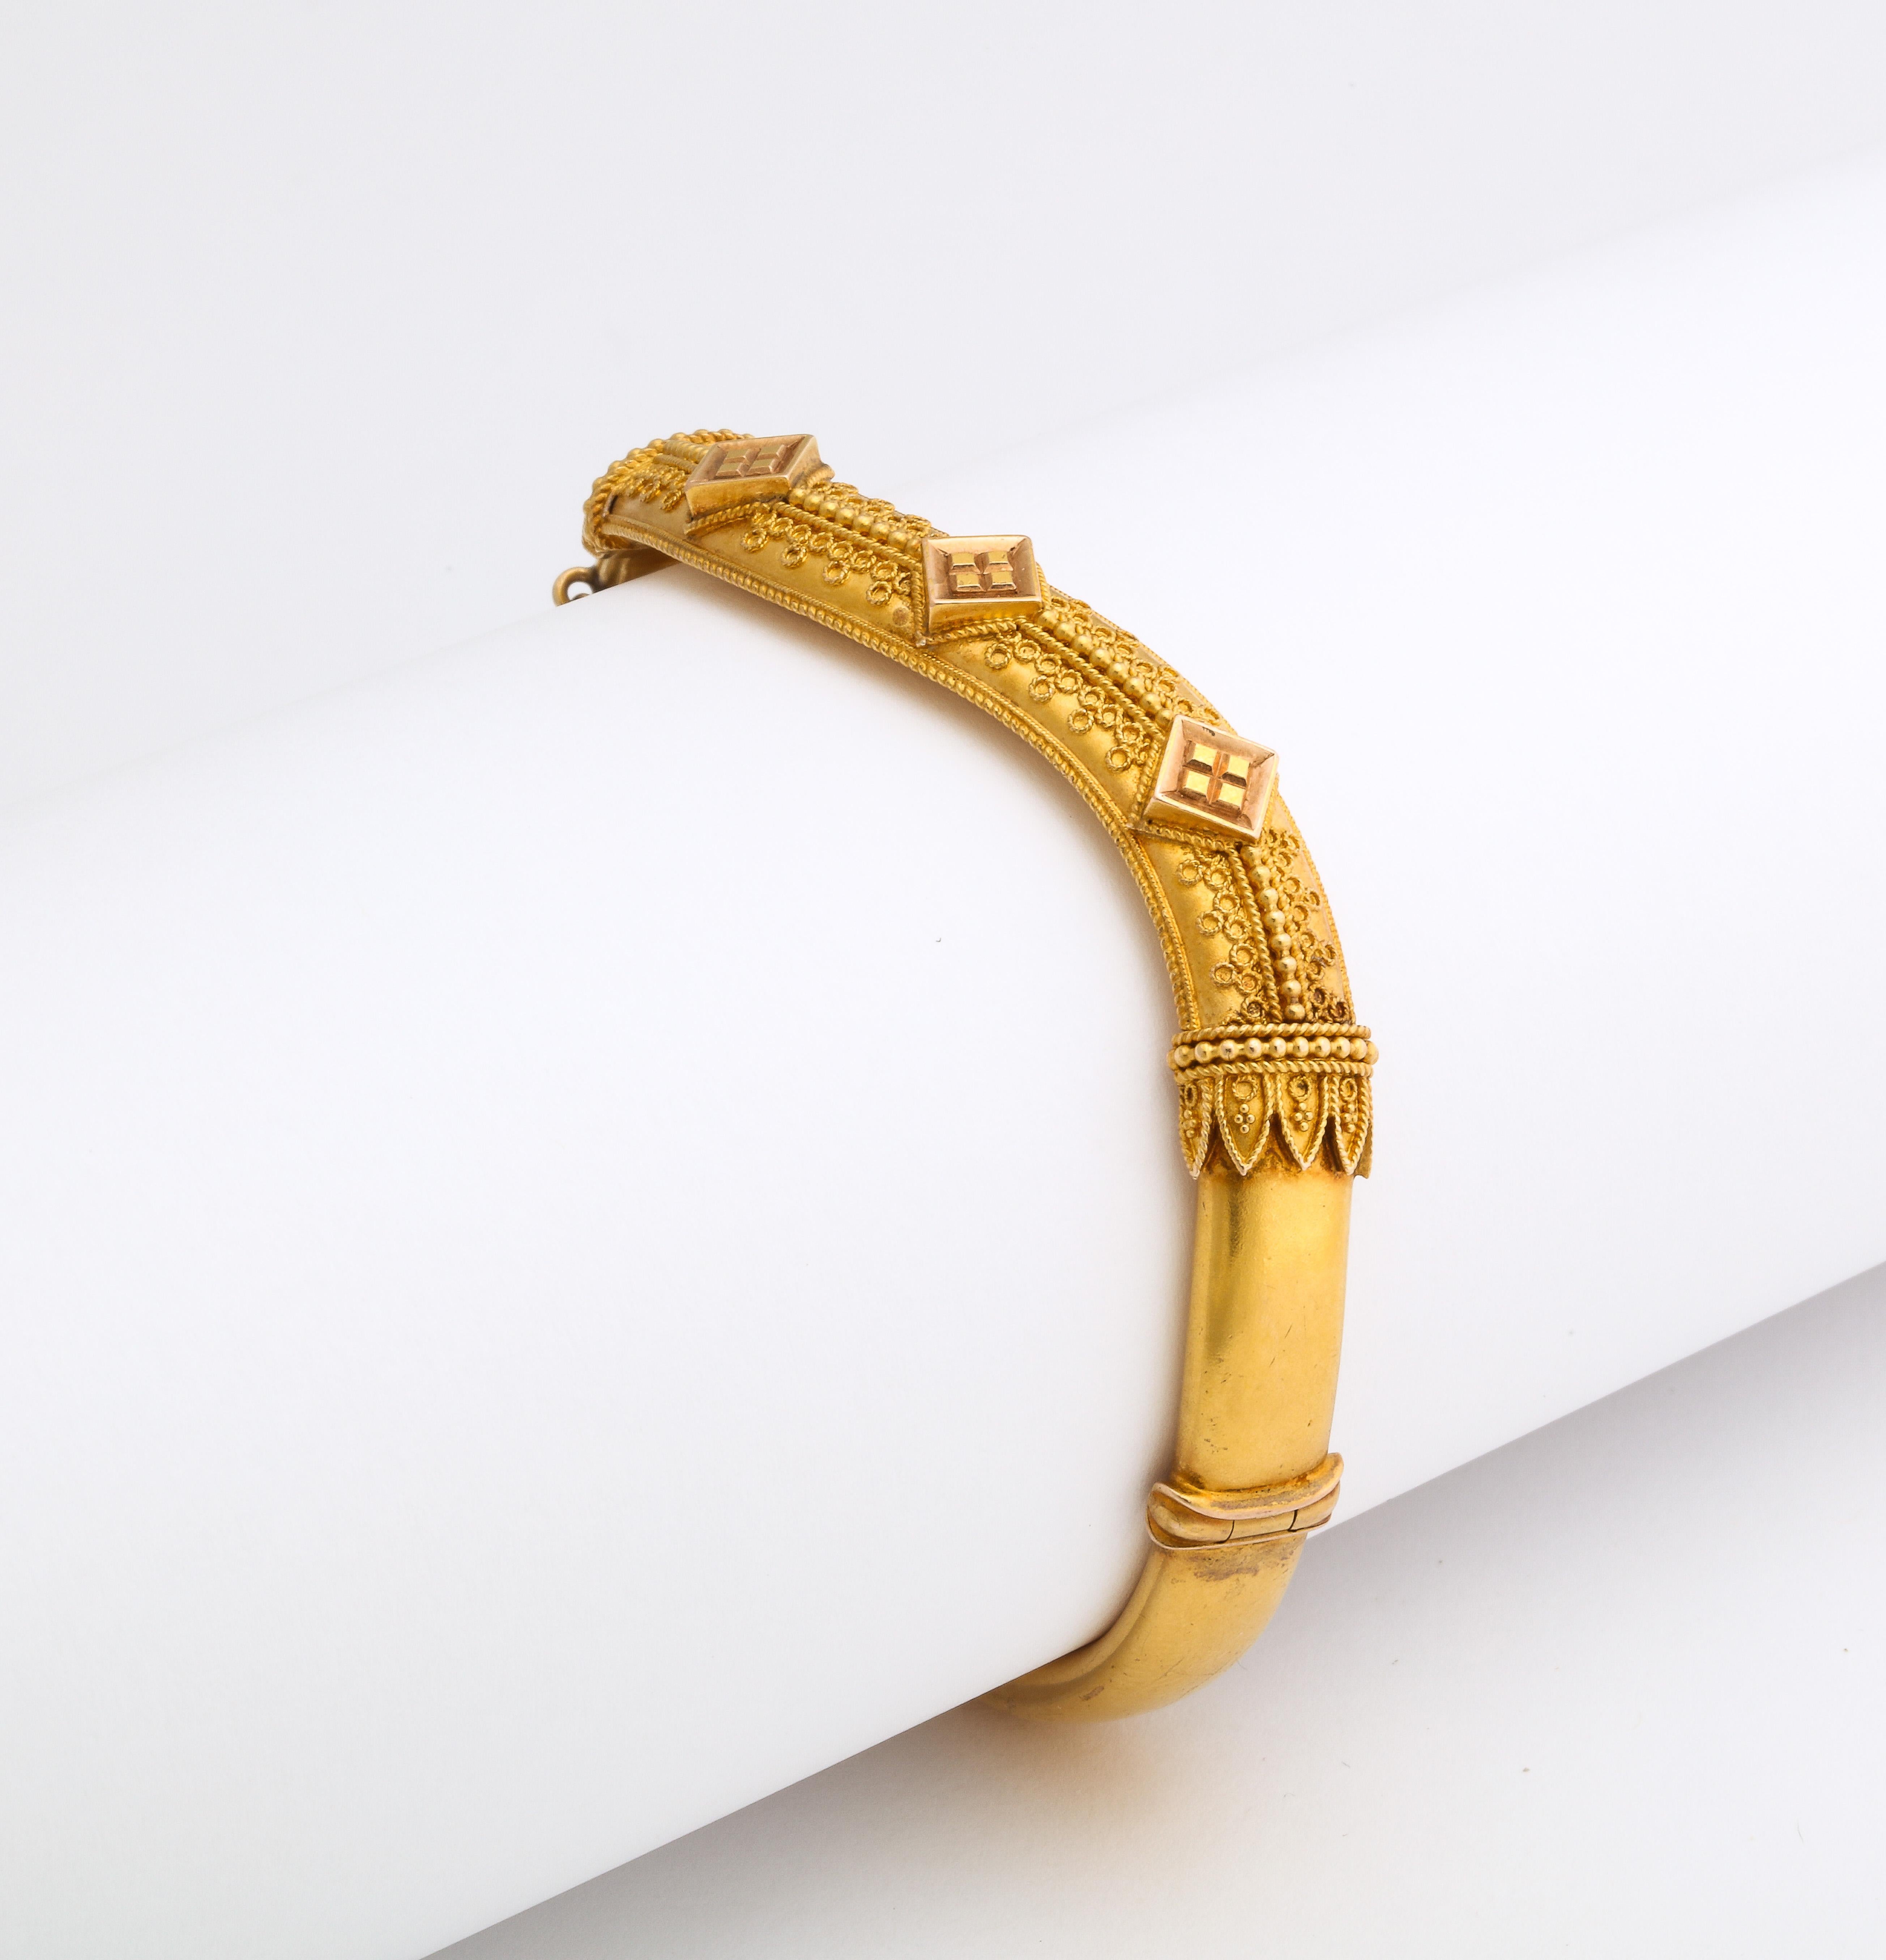 Antique Etruscan Revival Wave Bracelet in 15 Kt Gold For Sale 2